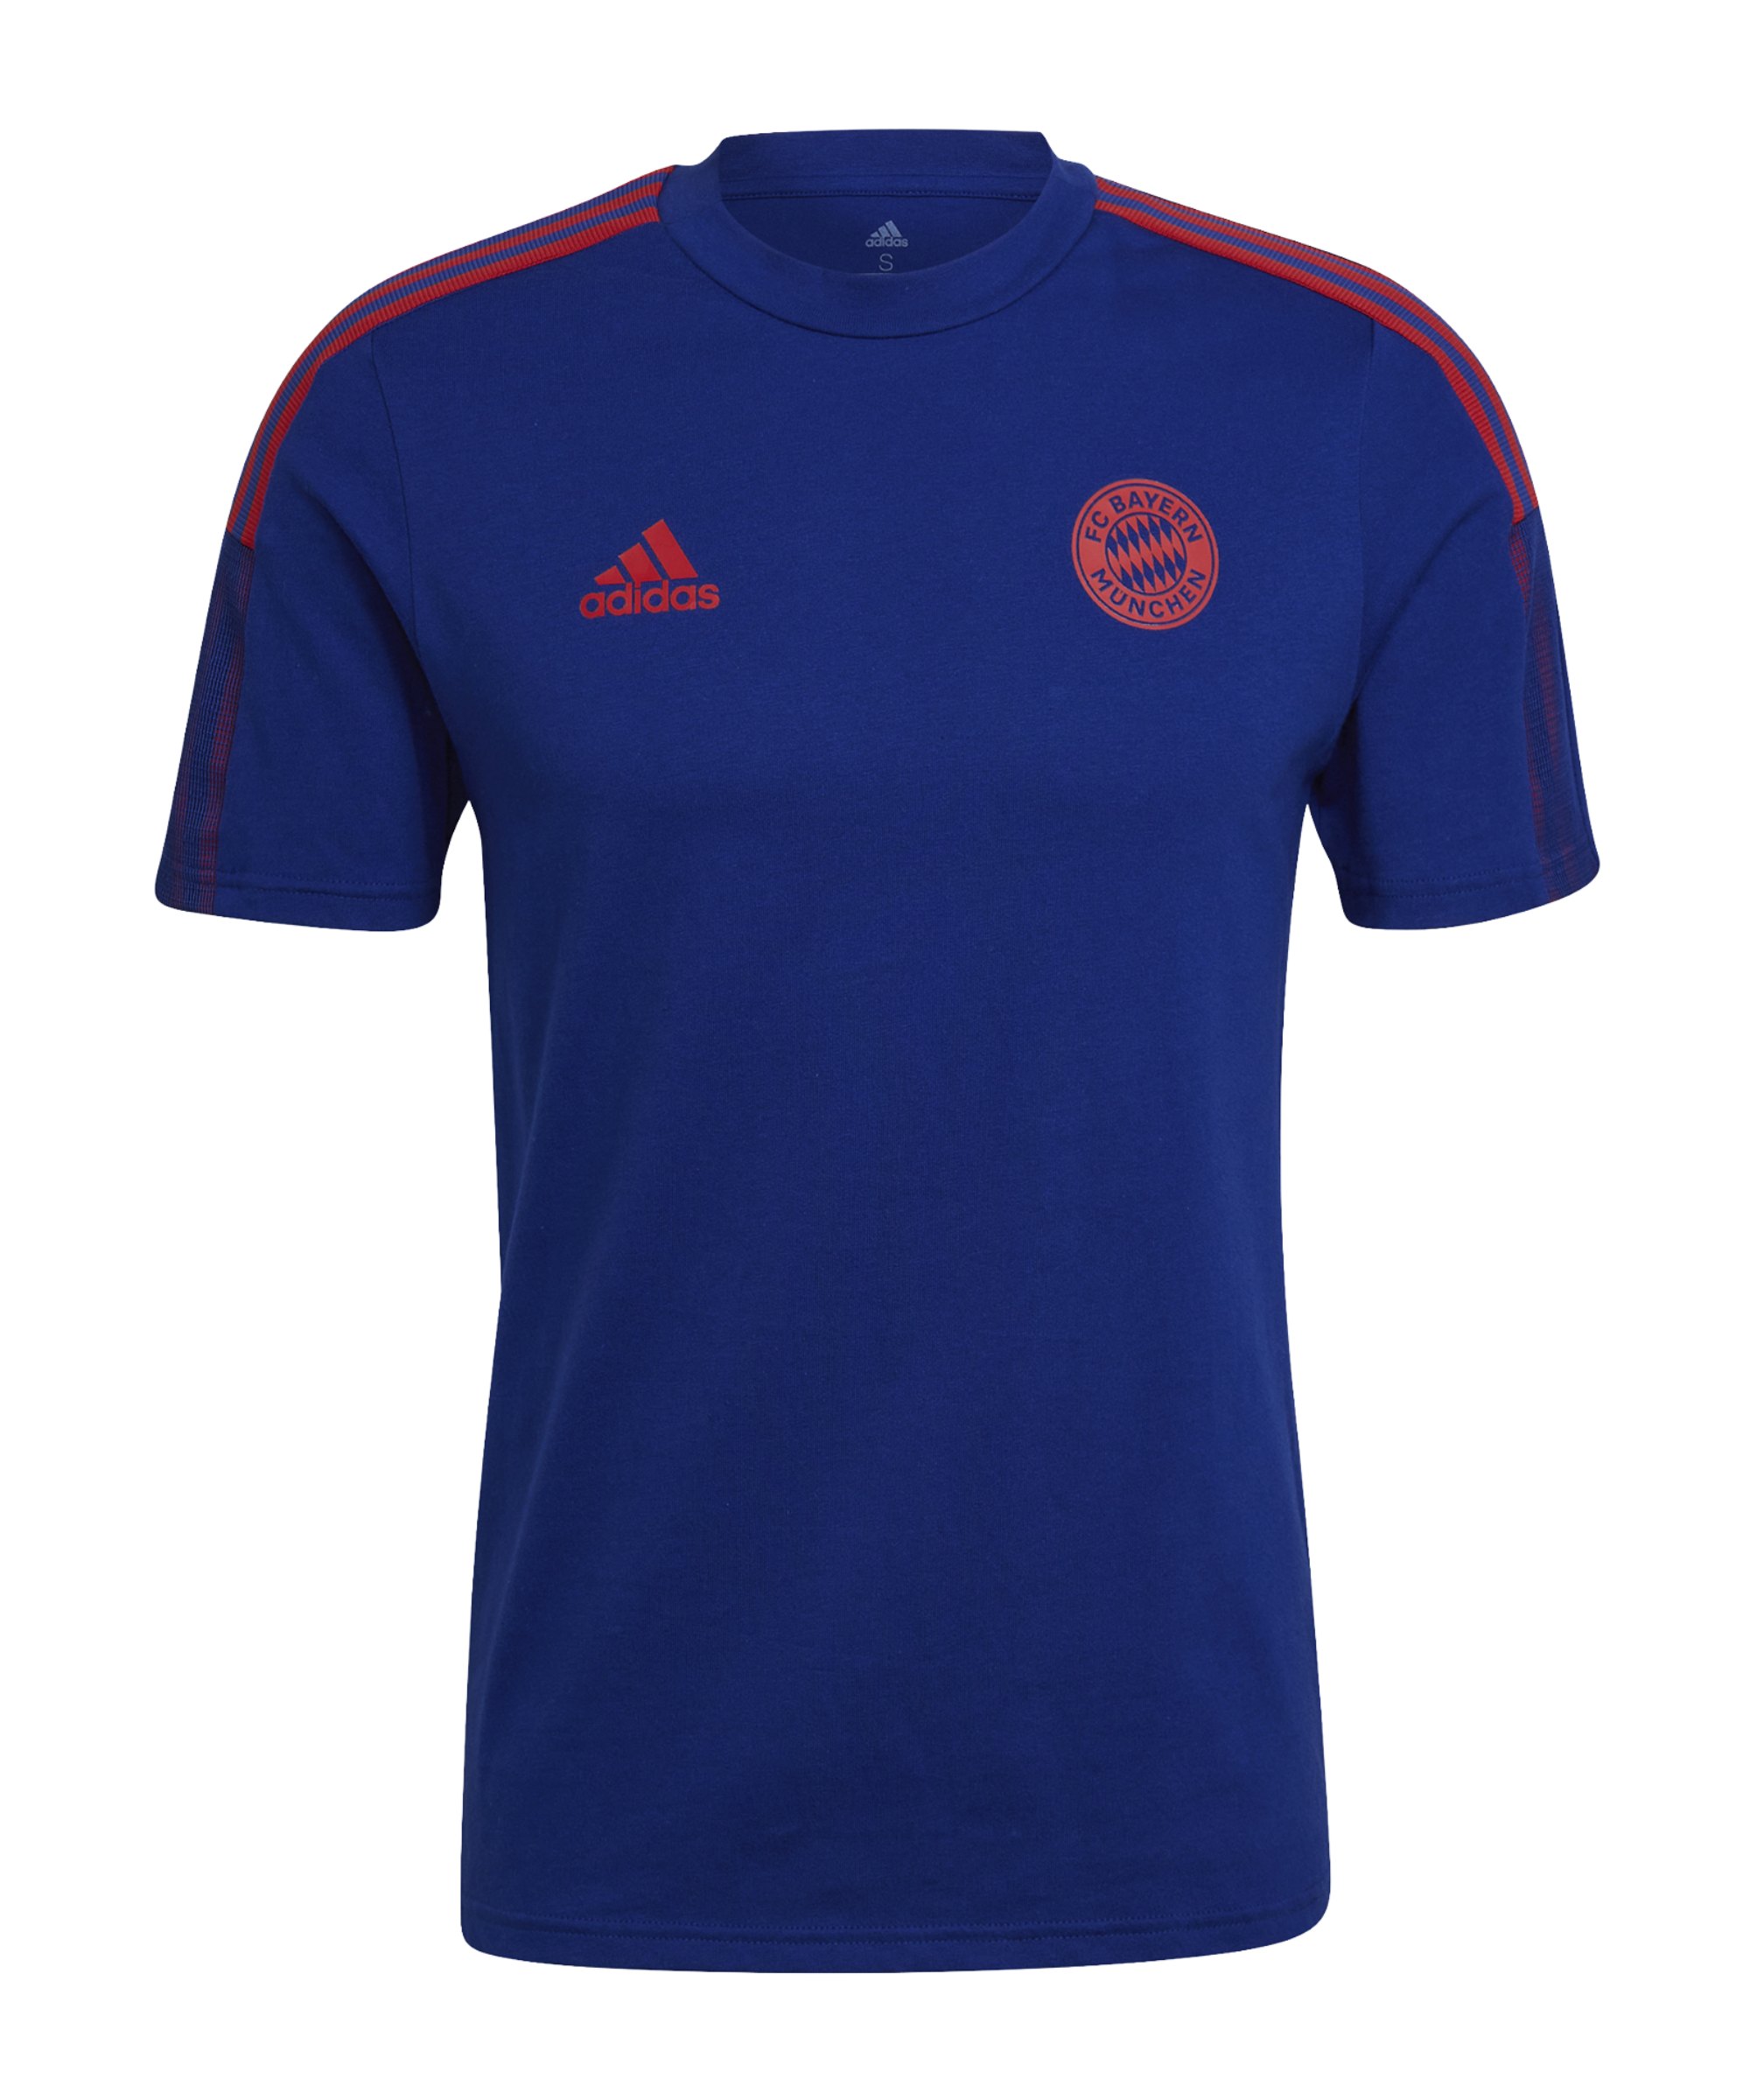 adidas FC Bayern München T-Shirt Blau Rot - blau